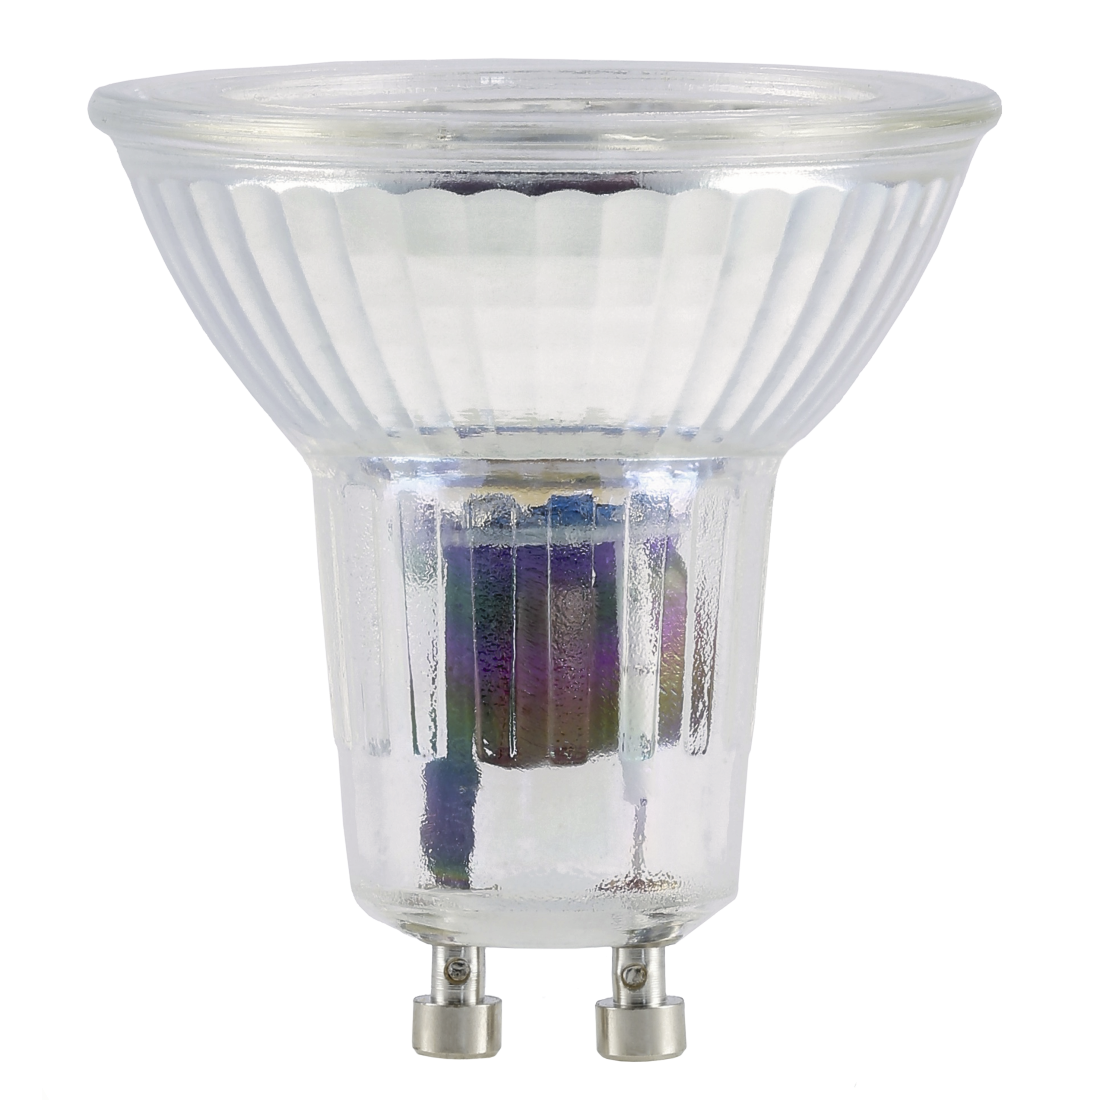 abx Druckfähige Abbildung - Xavax, LED-Lampe, GU10, 350lm ersetzt 50W, Reflektorlampe PAR16, Tageslicht, Glas